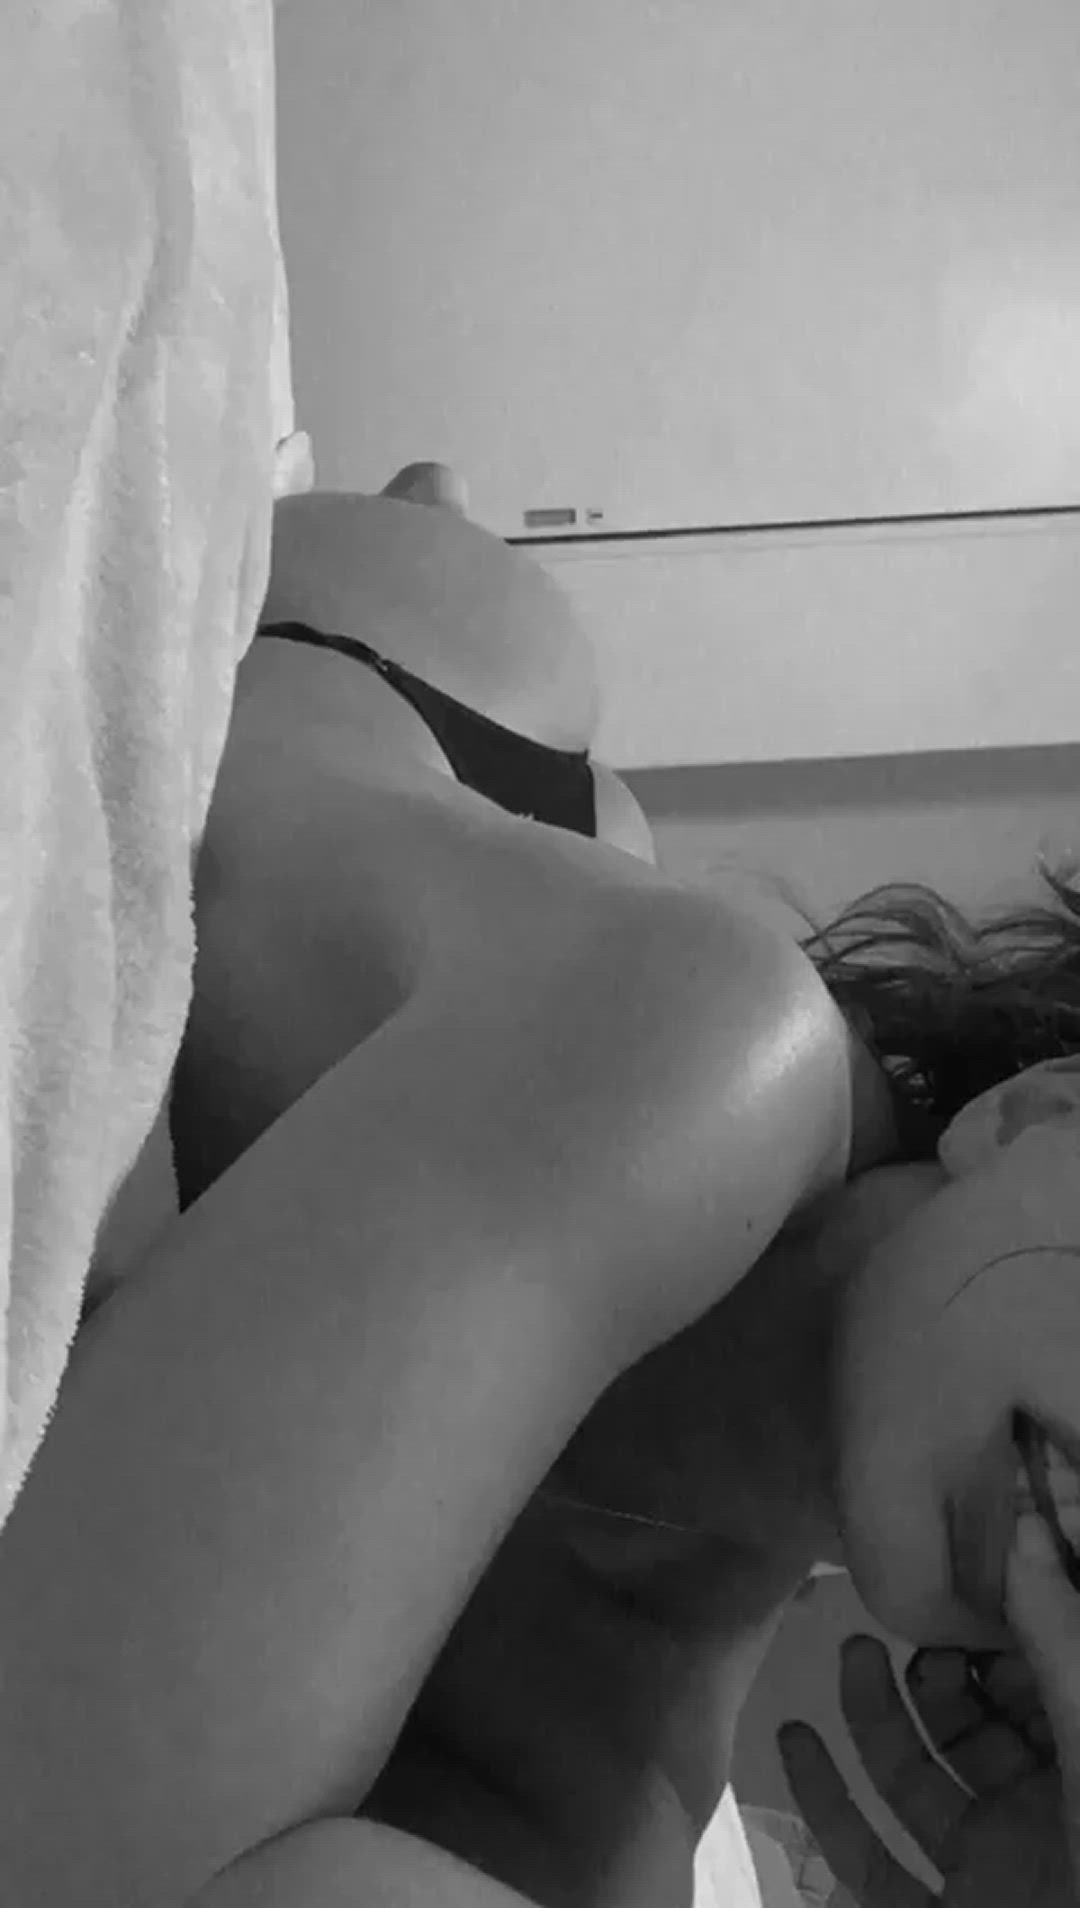 Ass porn video with onlyfans model irisdepenta <strong>@irisdepentapaid</strong>